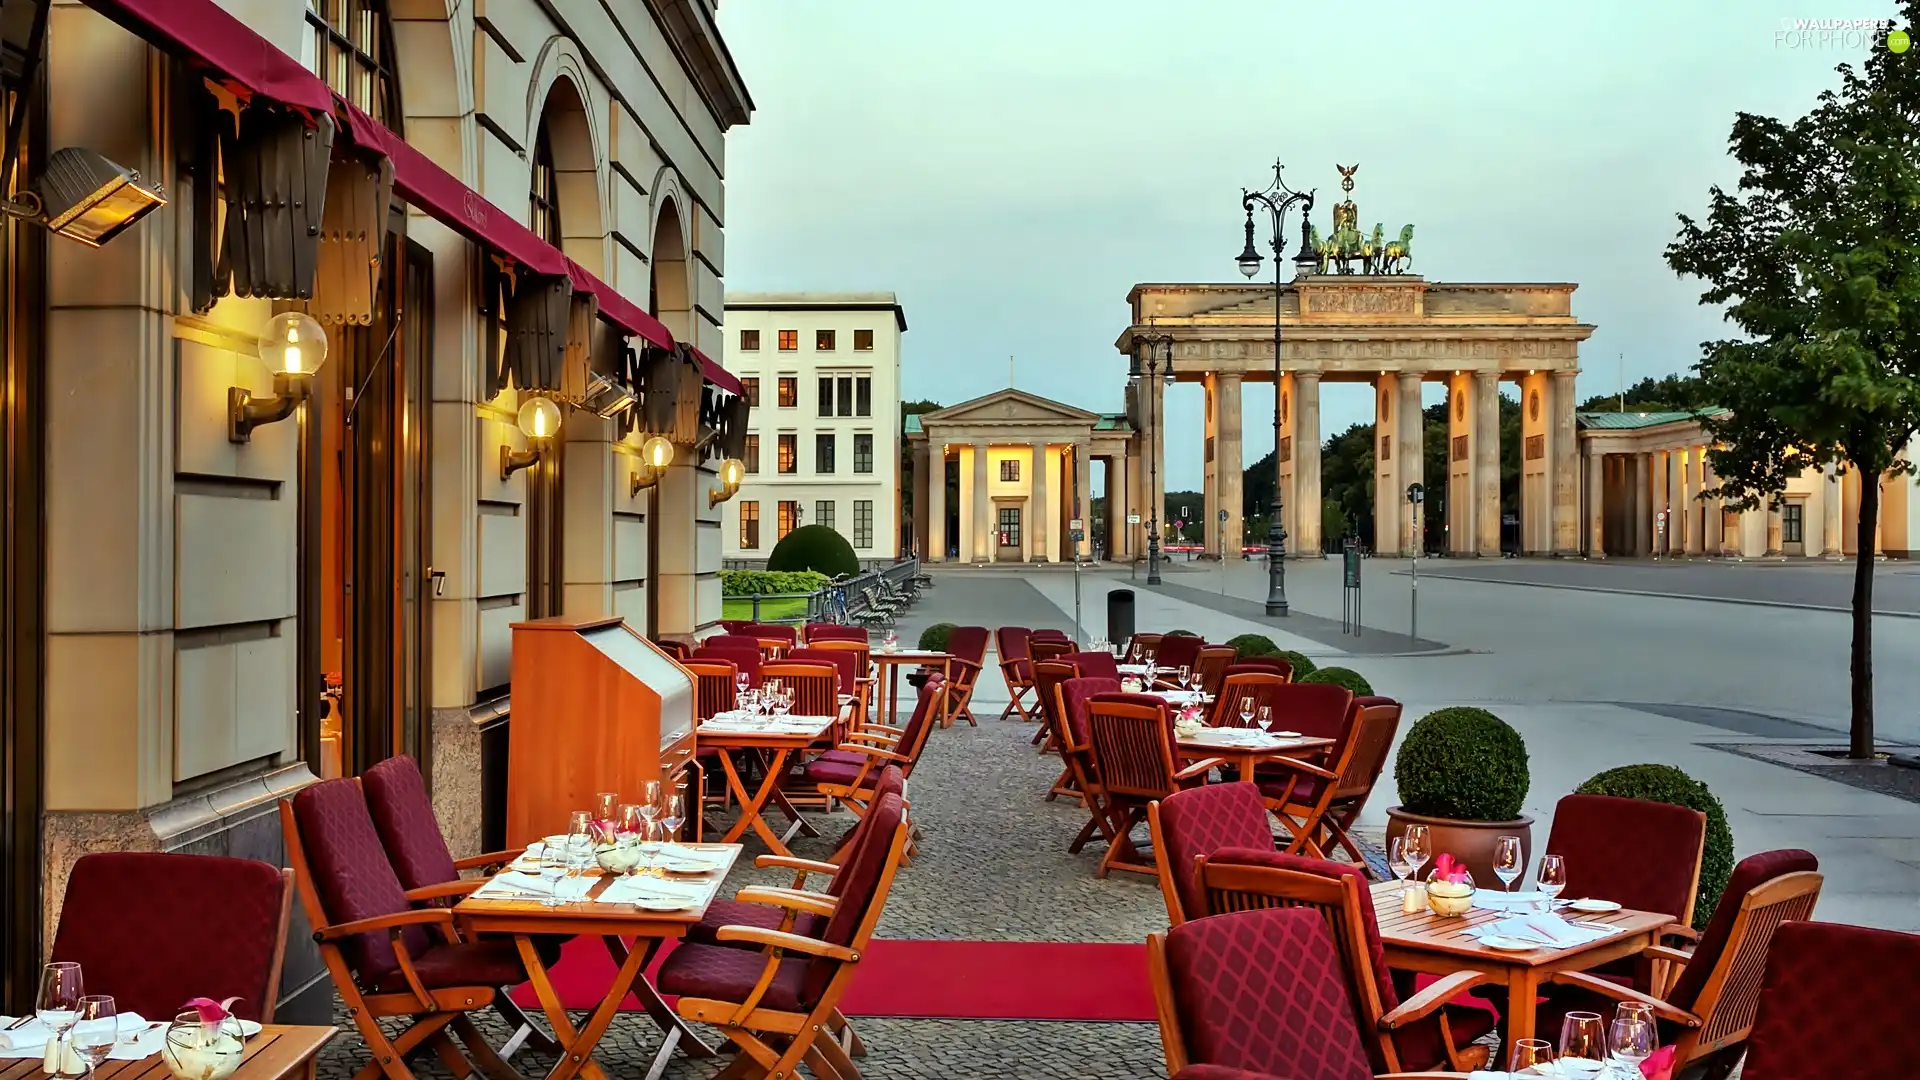 Restaurant, Gate, town, Brandenburg, fragment, Adlon, Hotel hall, Berlin